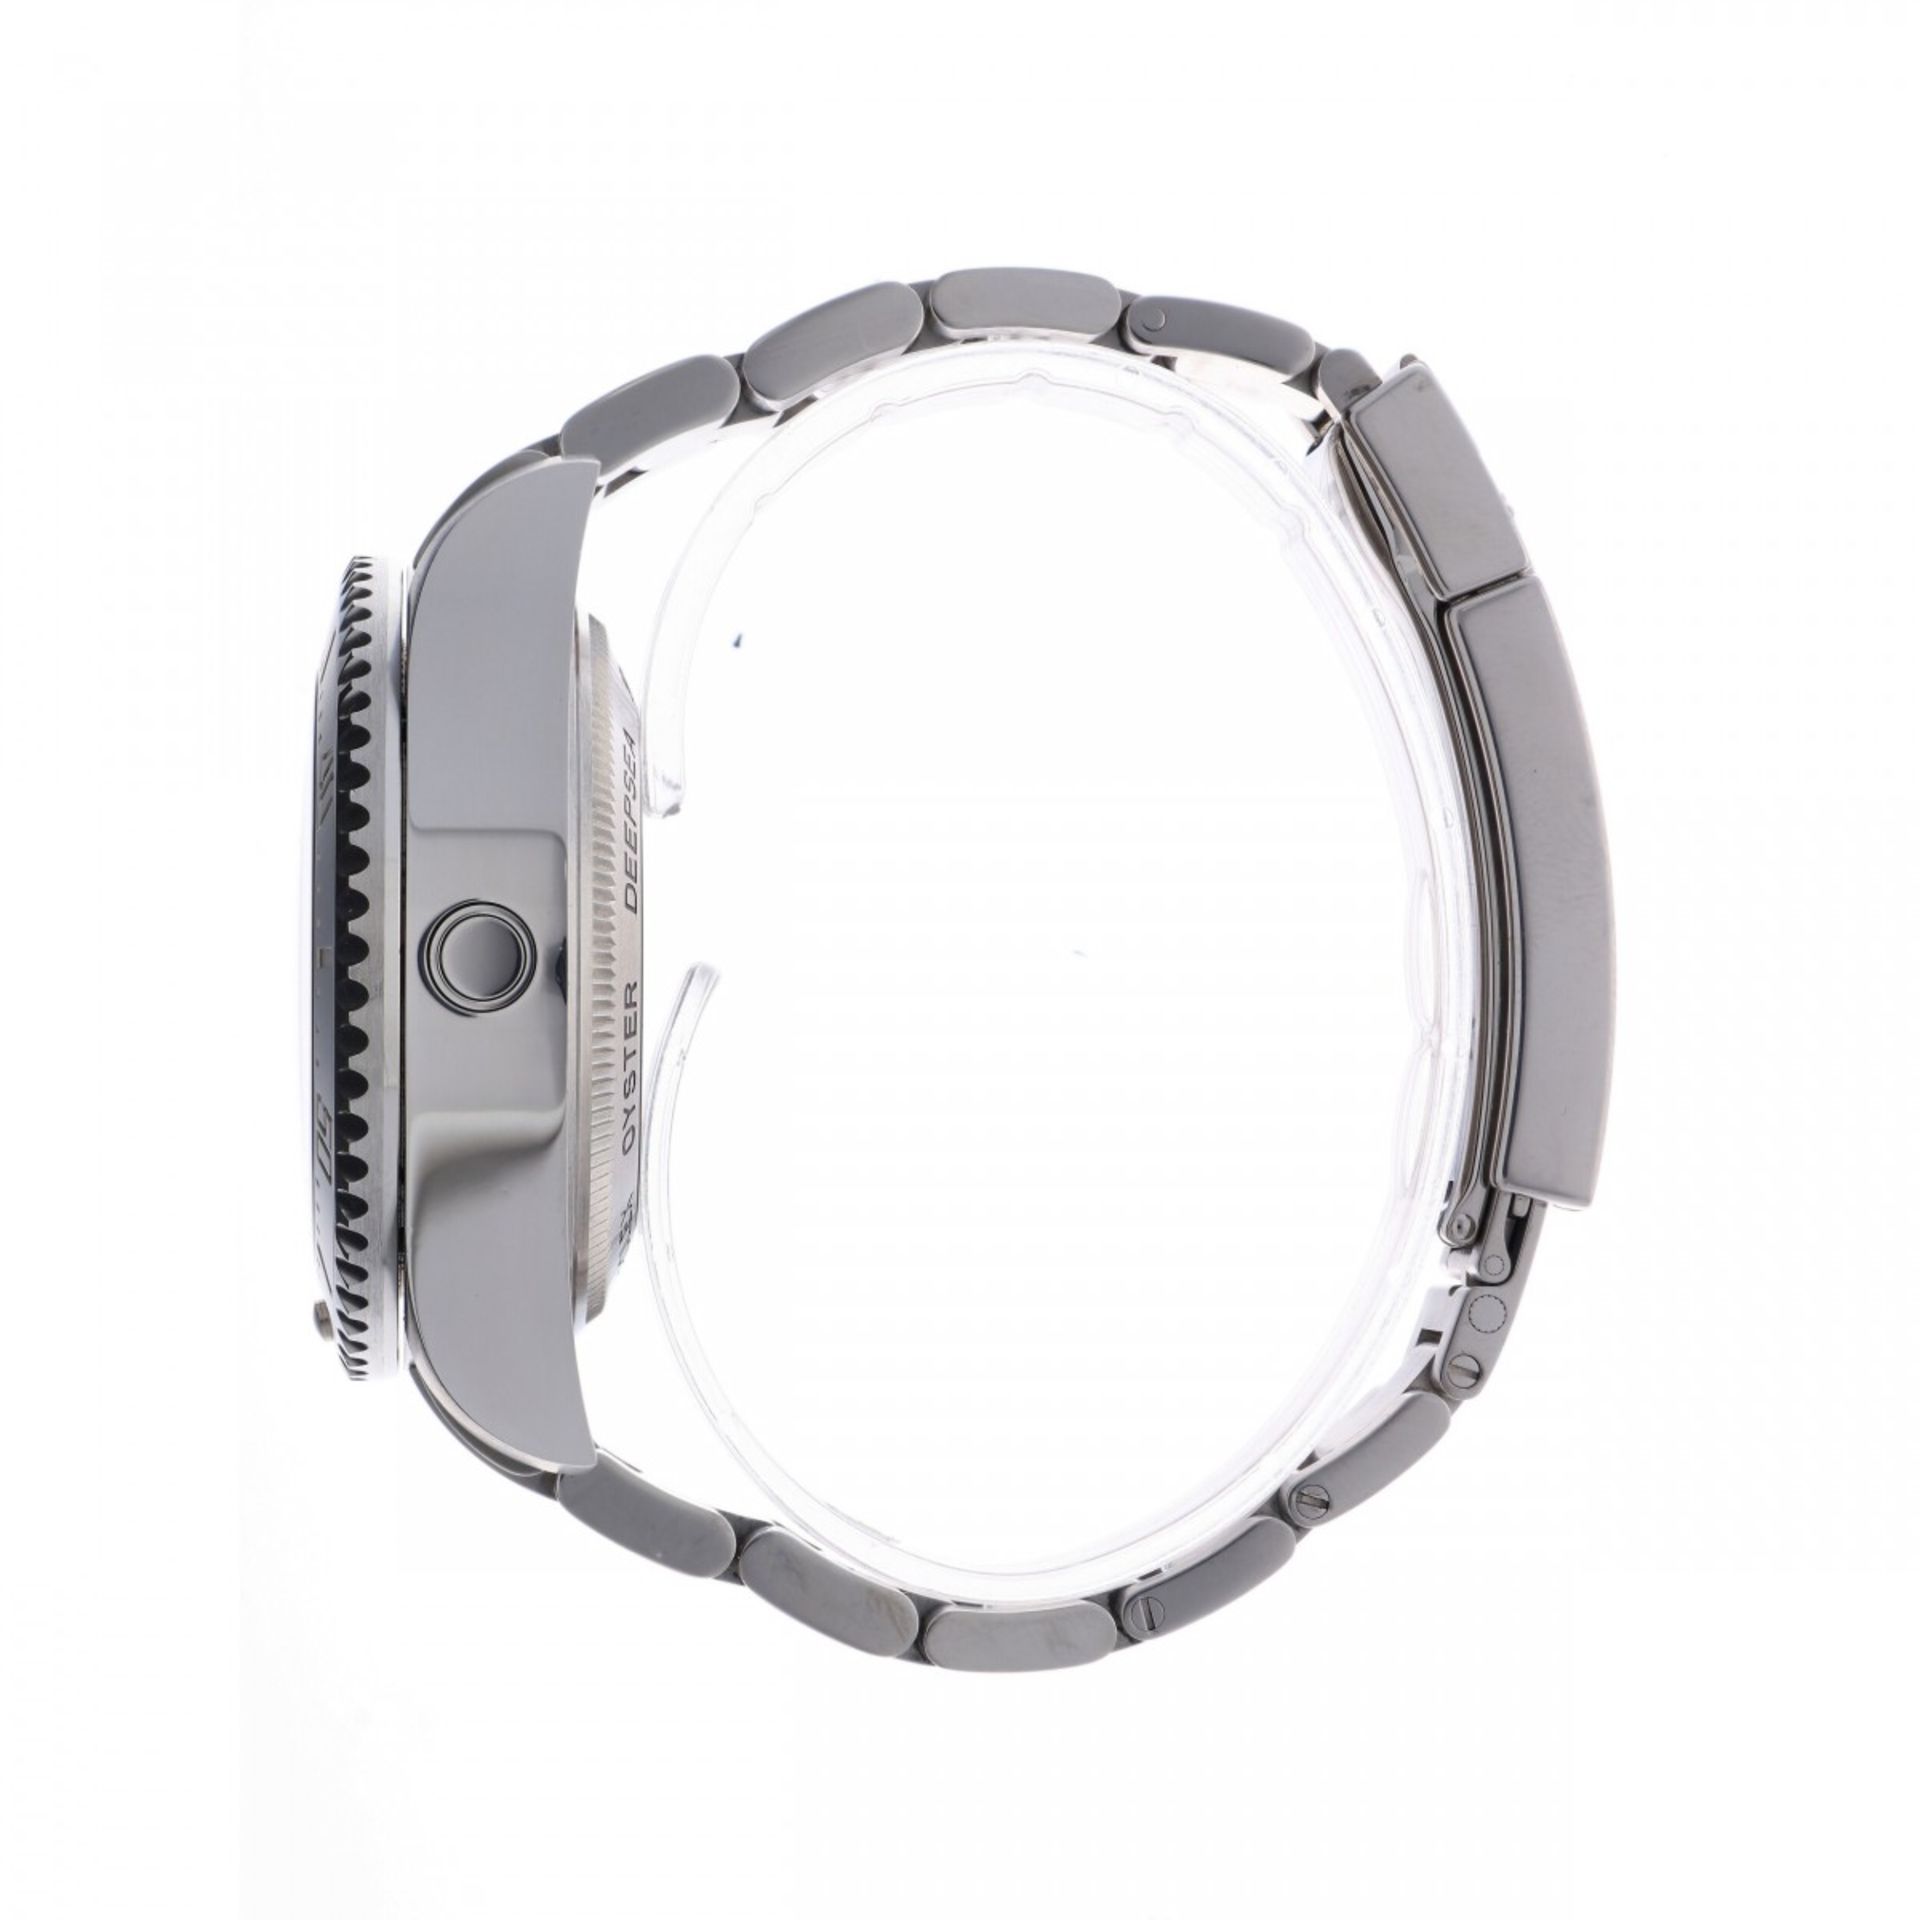 Rolex Sea Dweller Deepsea 116660 - Men's watch - approx. 2018 - Image 6 of 9